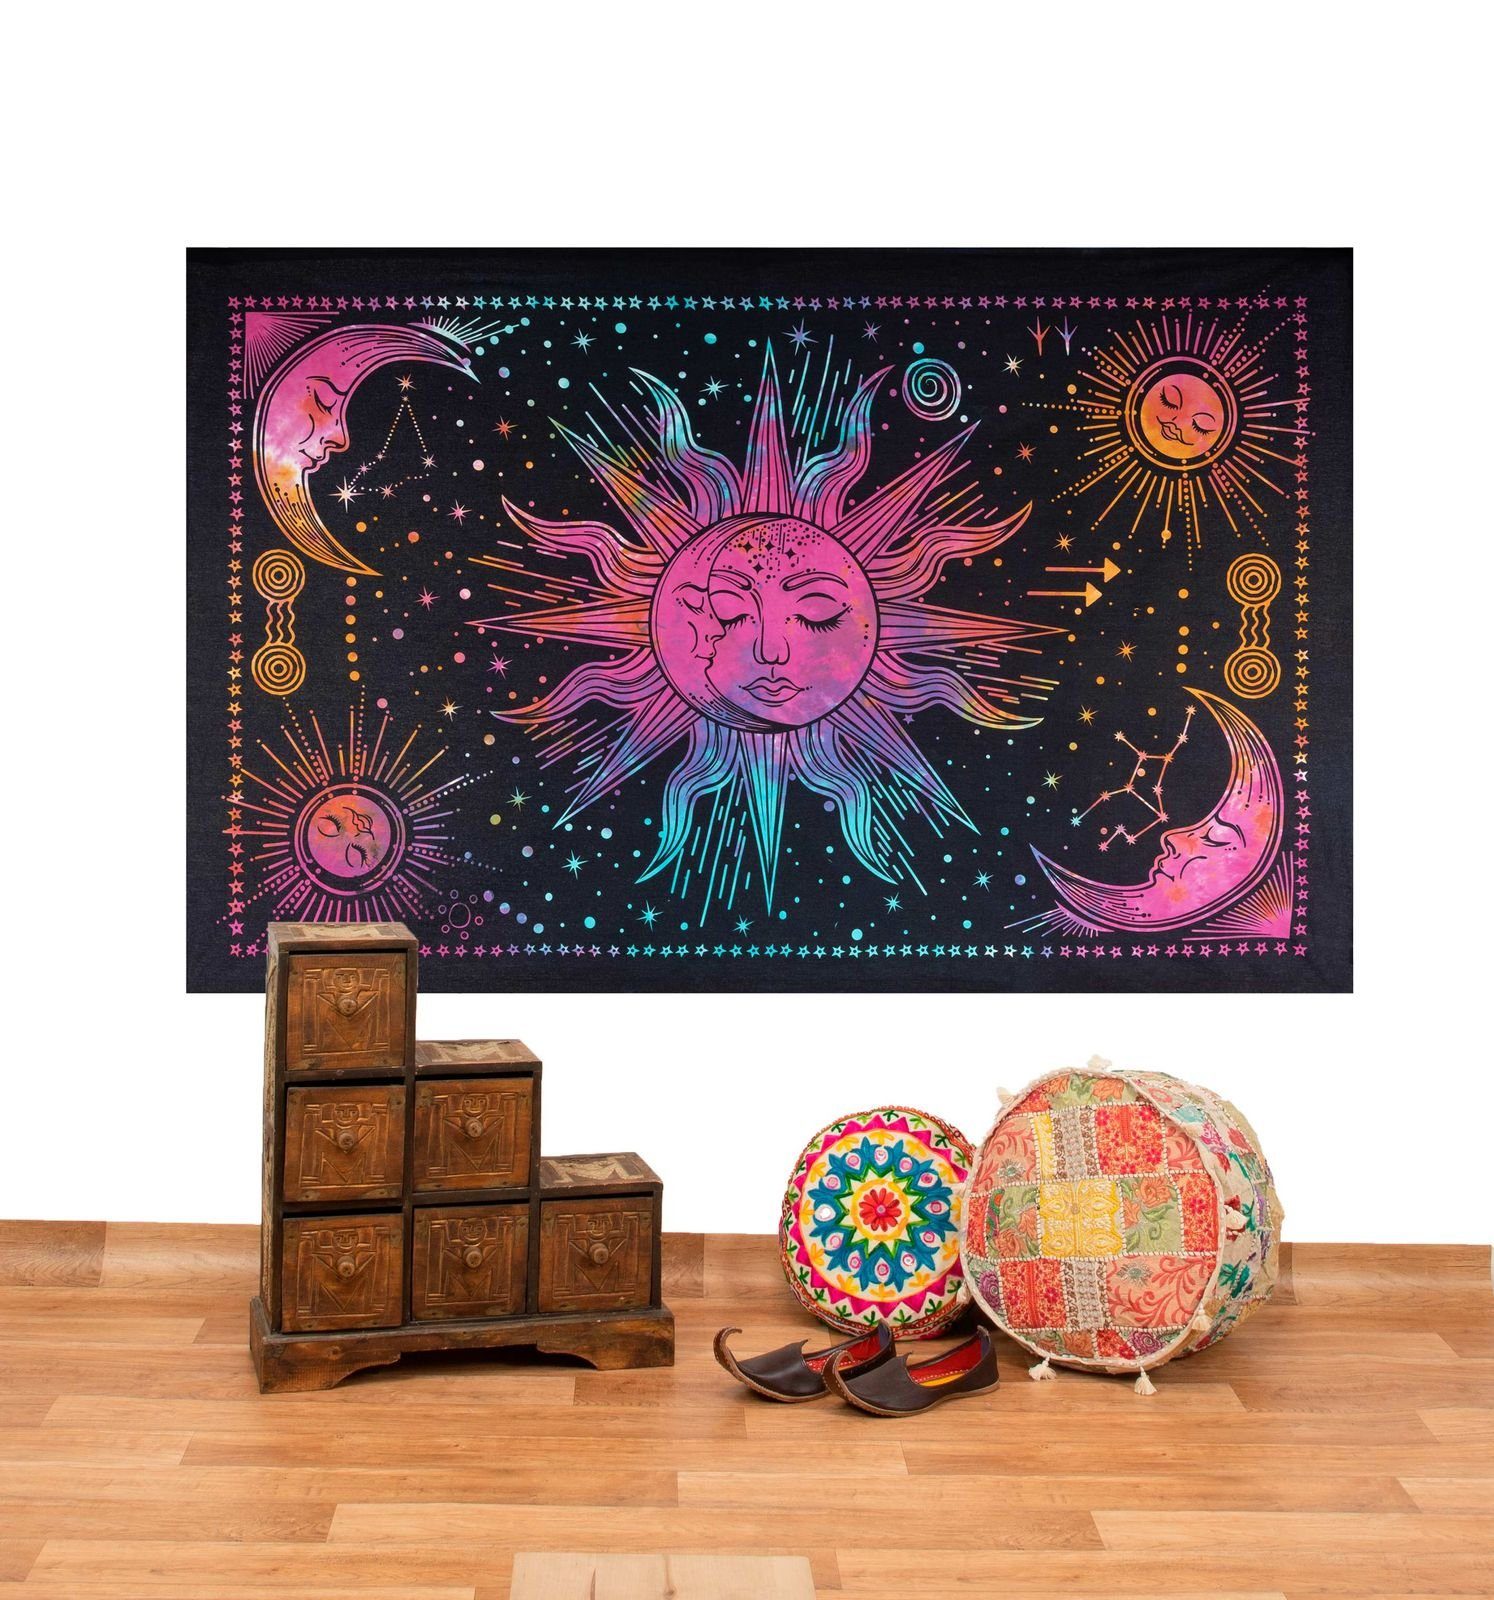 Wandteppich Tagesdecke Wandbehang Bunt Sonne Mond und Sterne Hippie ca.200 x 140cm, KUNST UND MAGIE